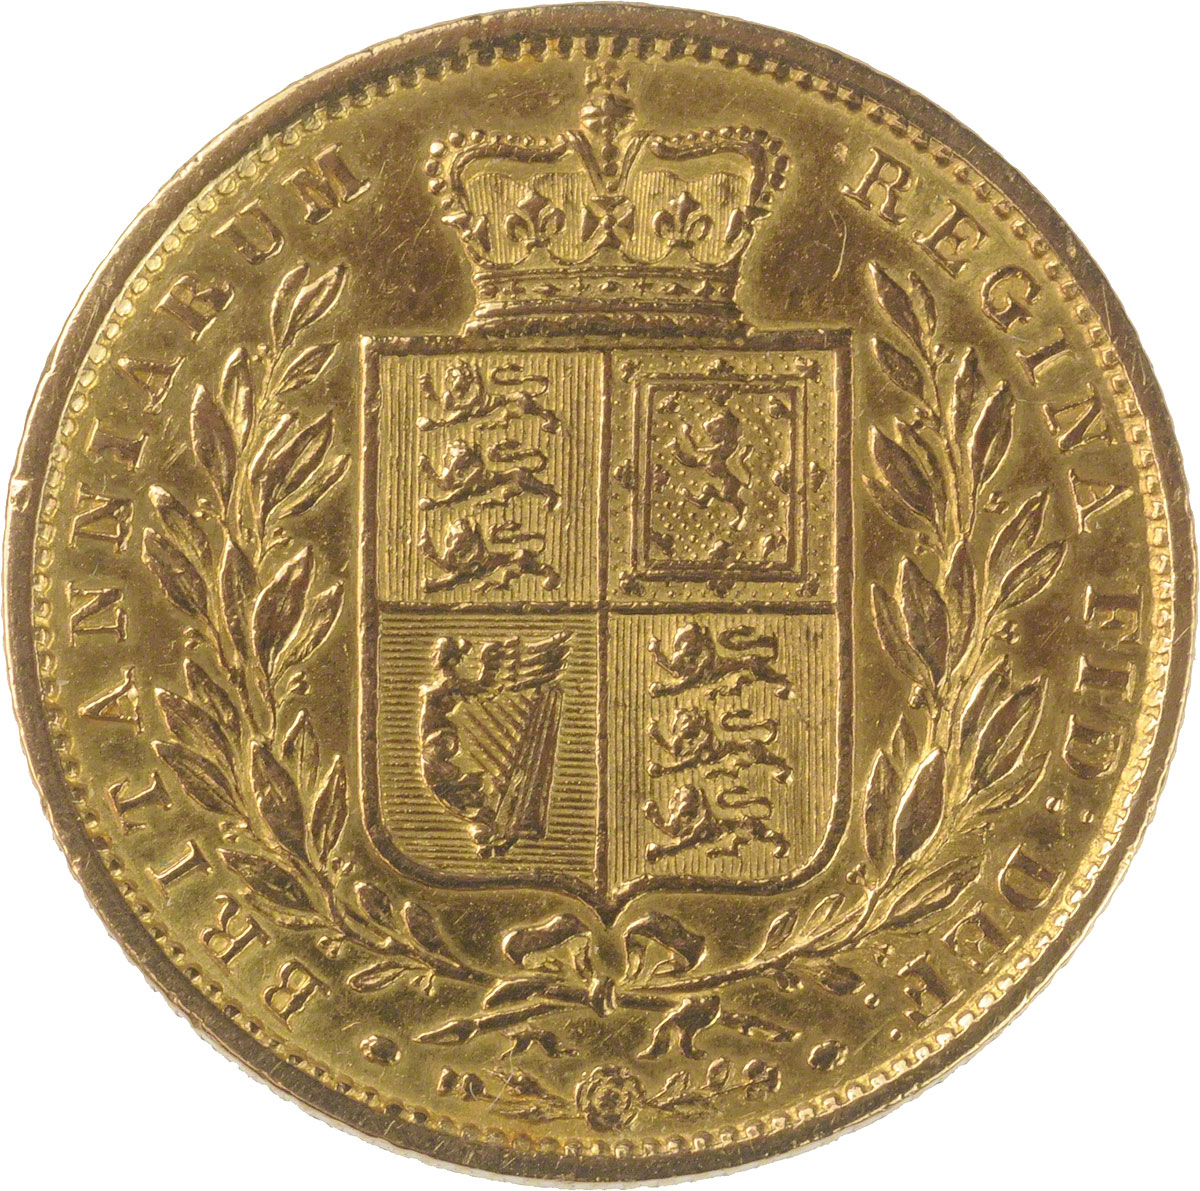 1855 Βικτώρια (Νομισματοκοπείο Λονδίνου)